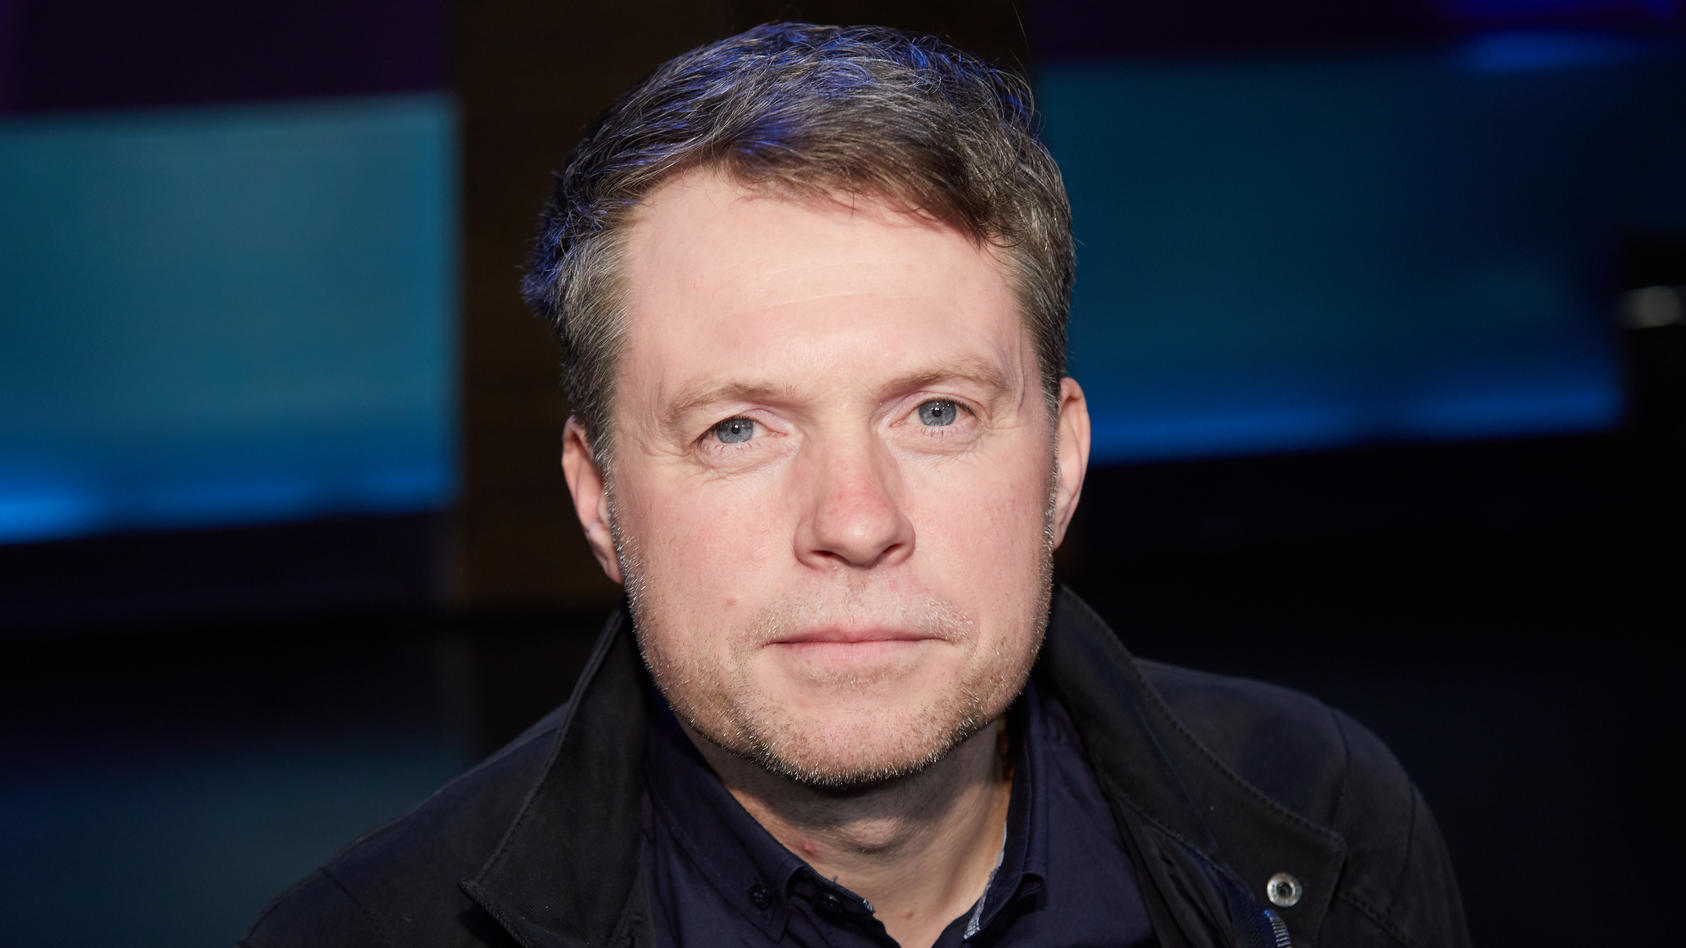 Jimm Kelly am 05.05.2017 in Hamburg vor der Aufzeichnung der "NDR Talkshow".